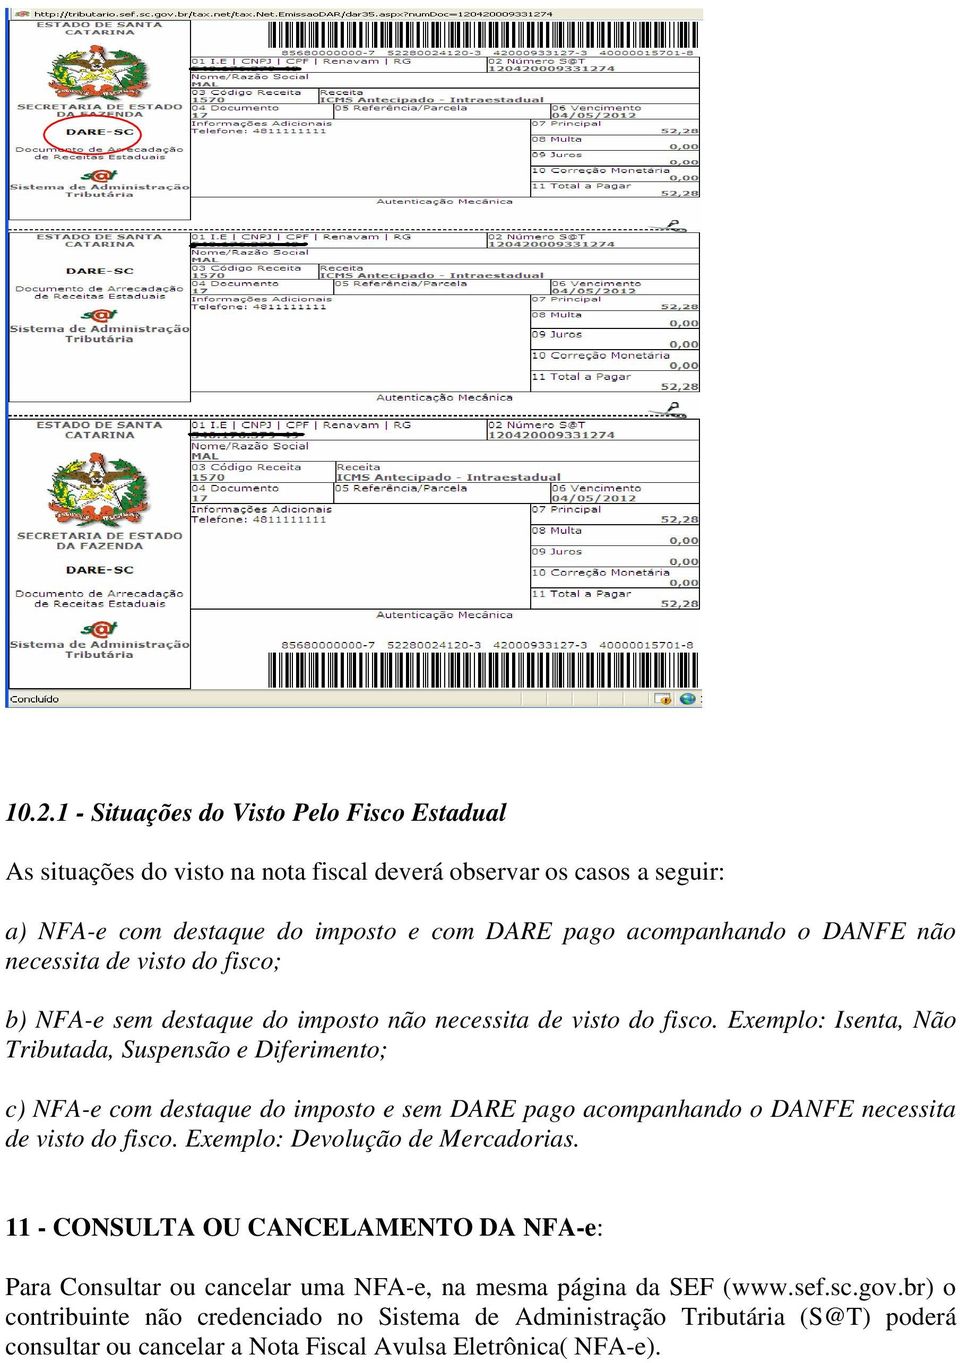 Exemplo: Isenta, Não Tributada, Suspensão e Diferimento; c) NFA-e com destaque do imposto e sem DARE pago acompanhando o DANFE necessita de visto do fisco.